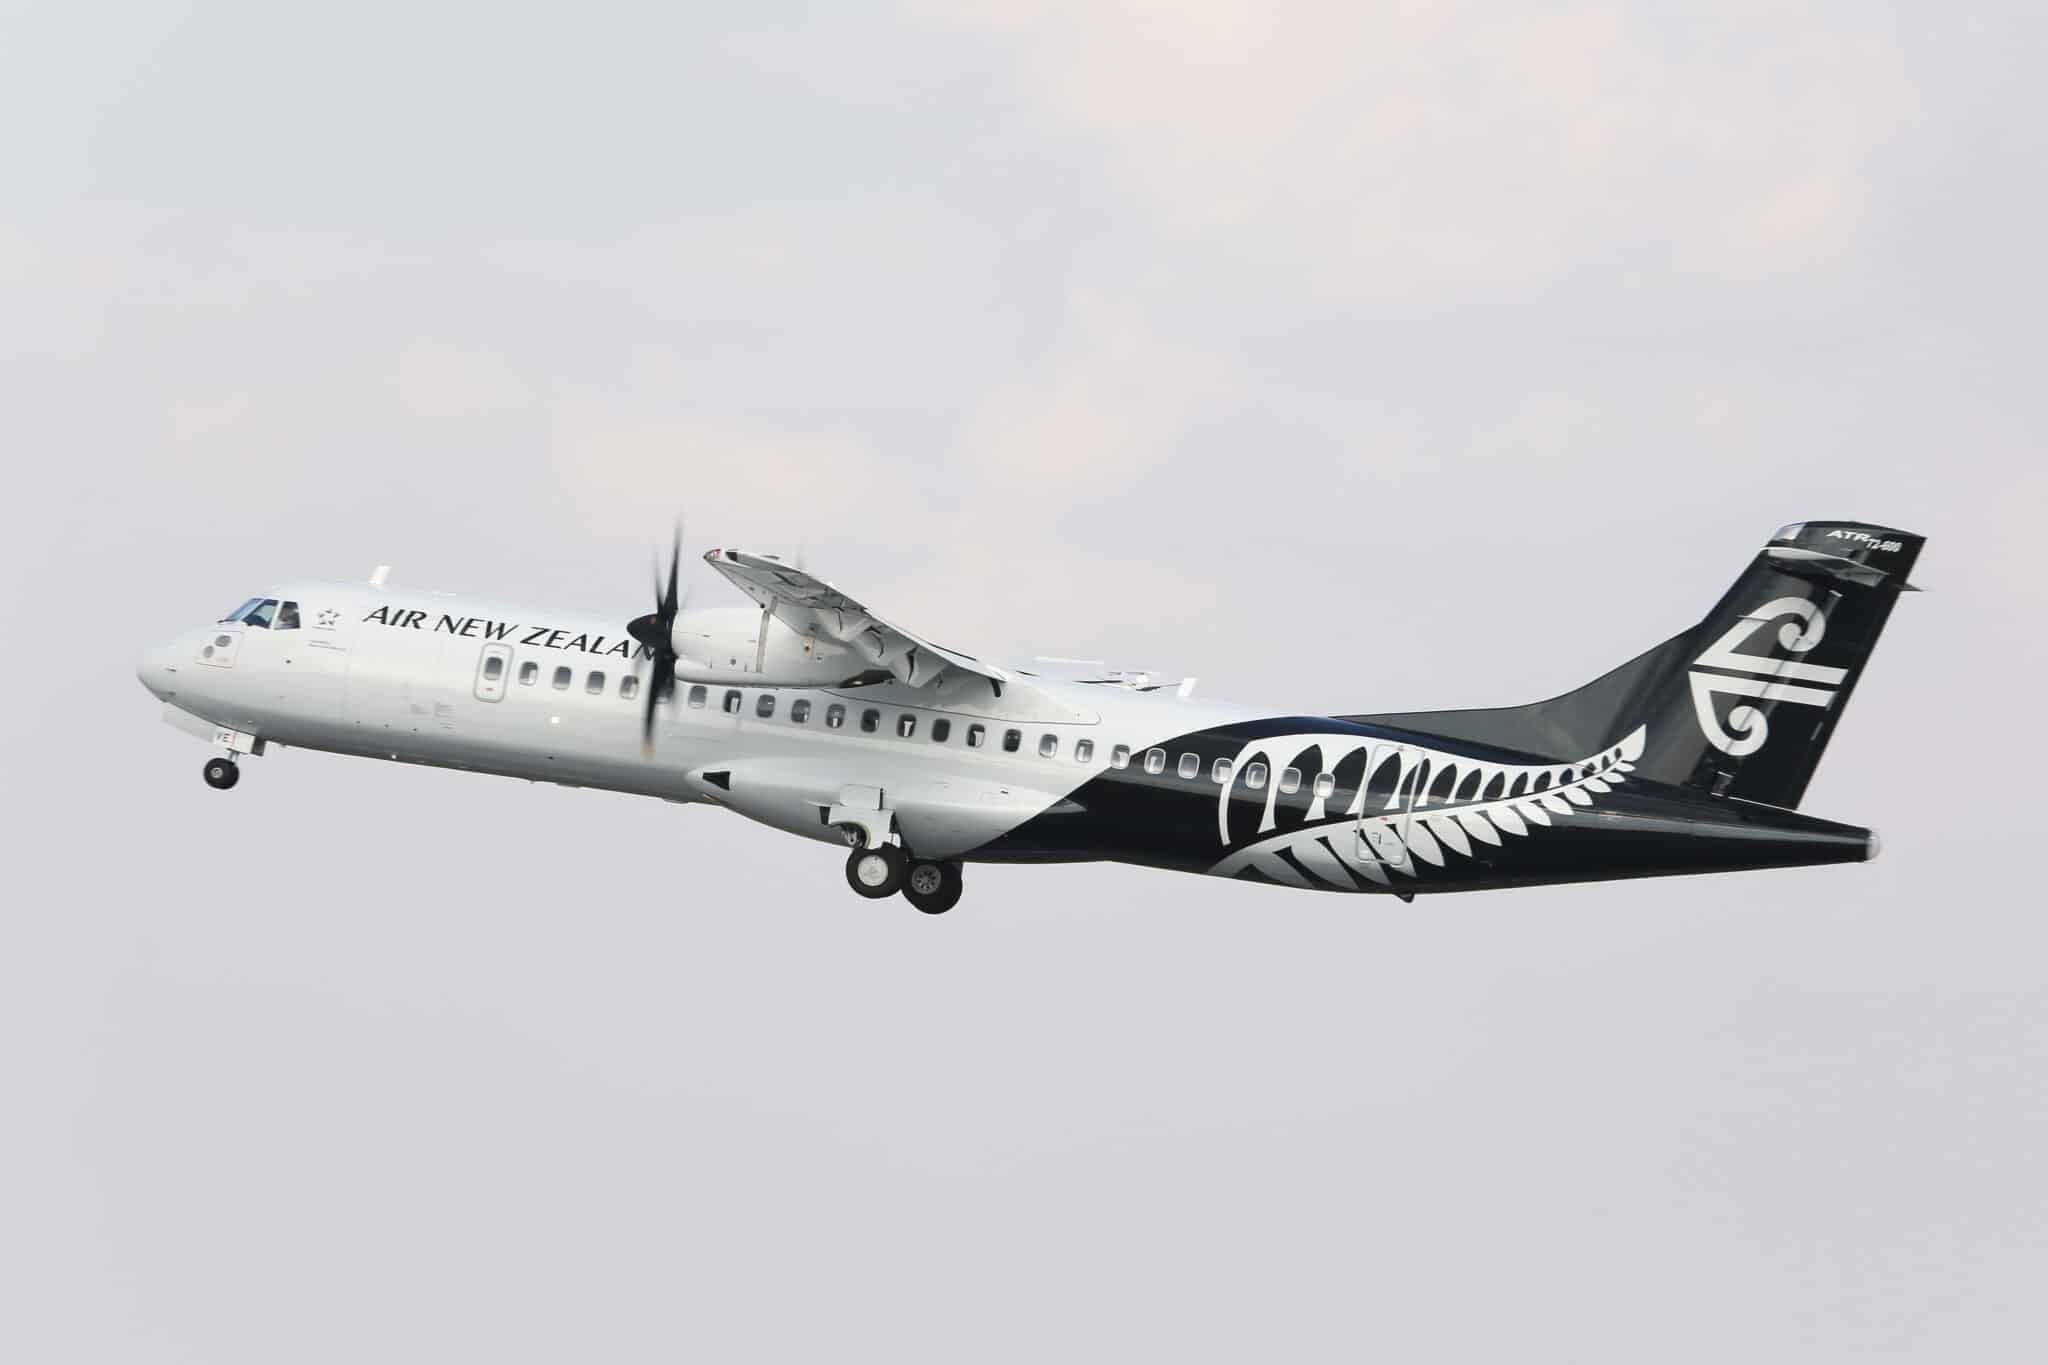 Le constructeur franco-italien ATR engrange une nouvelle commande d'Air New Zealand